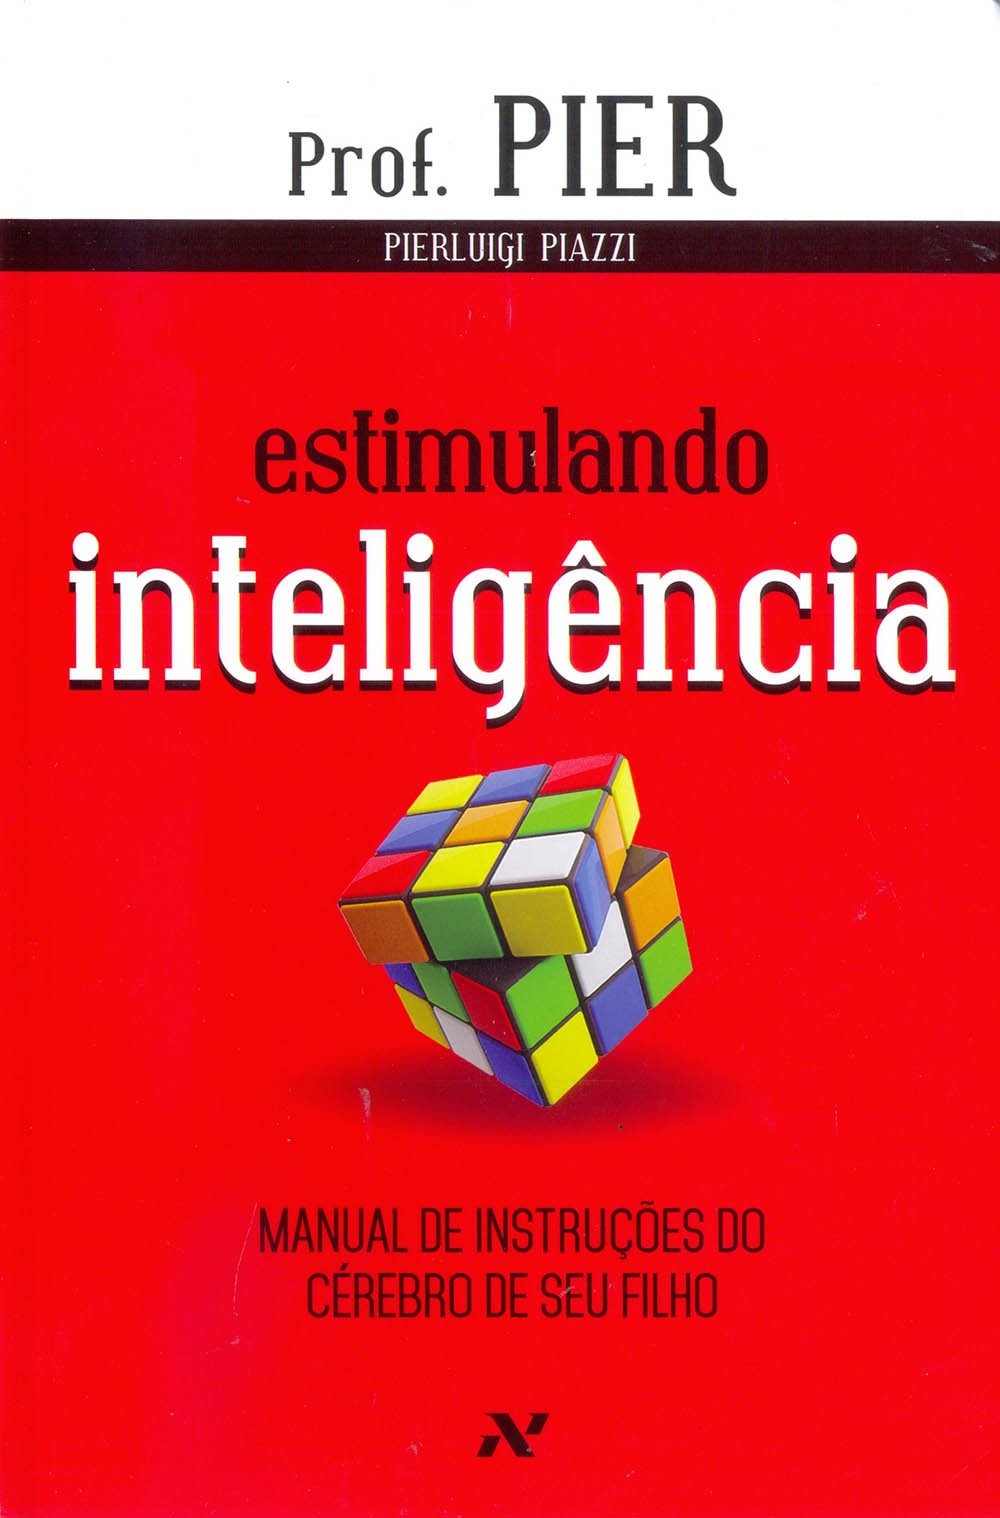 Estimulando Inteligência  - Manual de Instruções do Cérebro de Seu Filho - Vol. 2